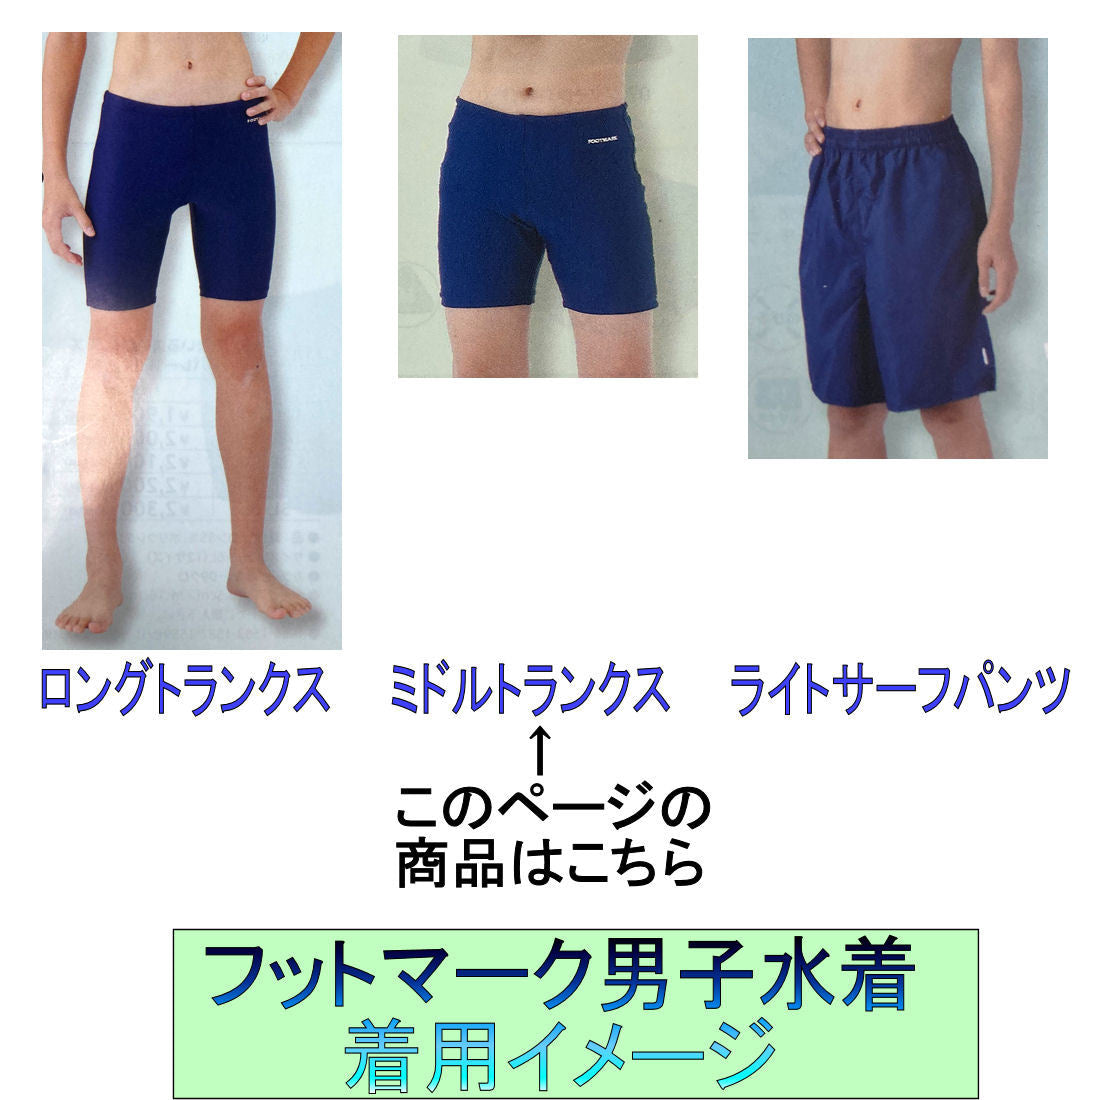 【フットマーク】男子競泳スクール水 140/150サイズ 日本製ライトサーフパンツ 型番101527 男児小中高生用